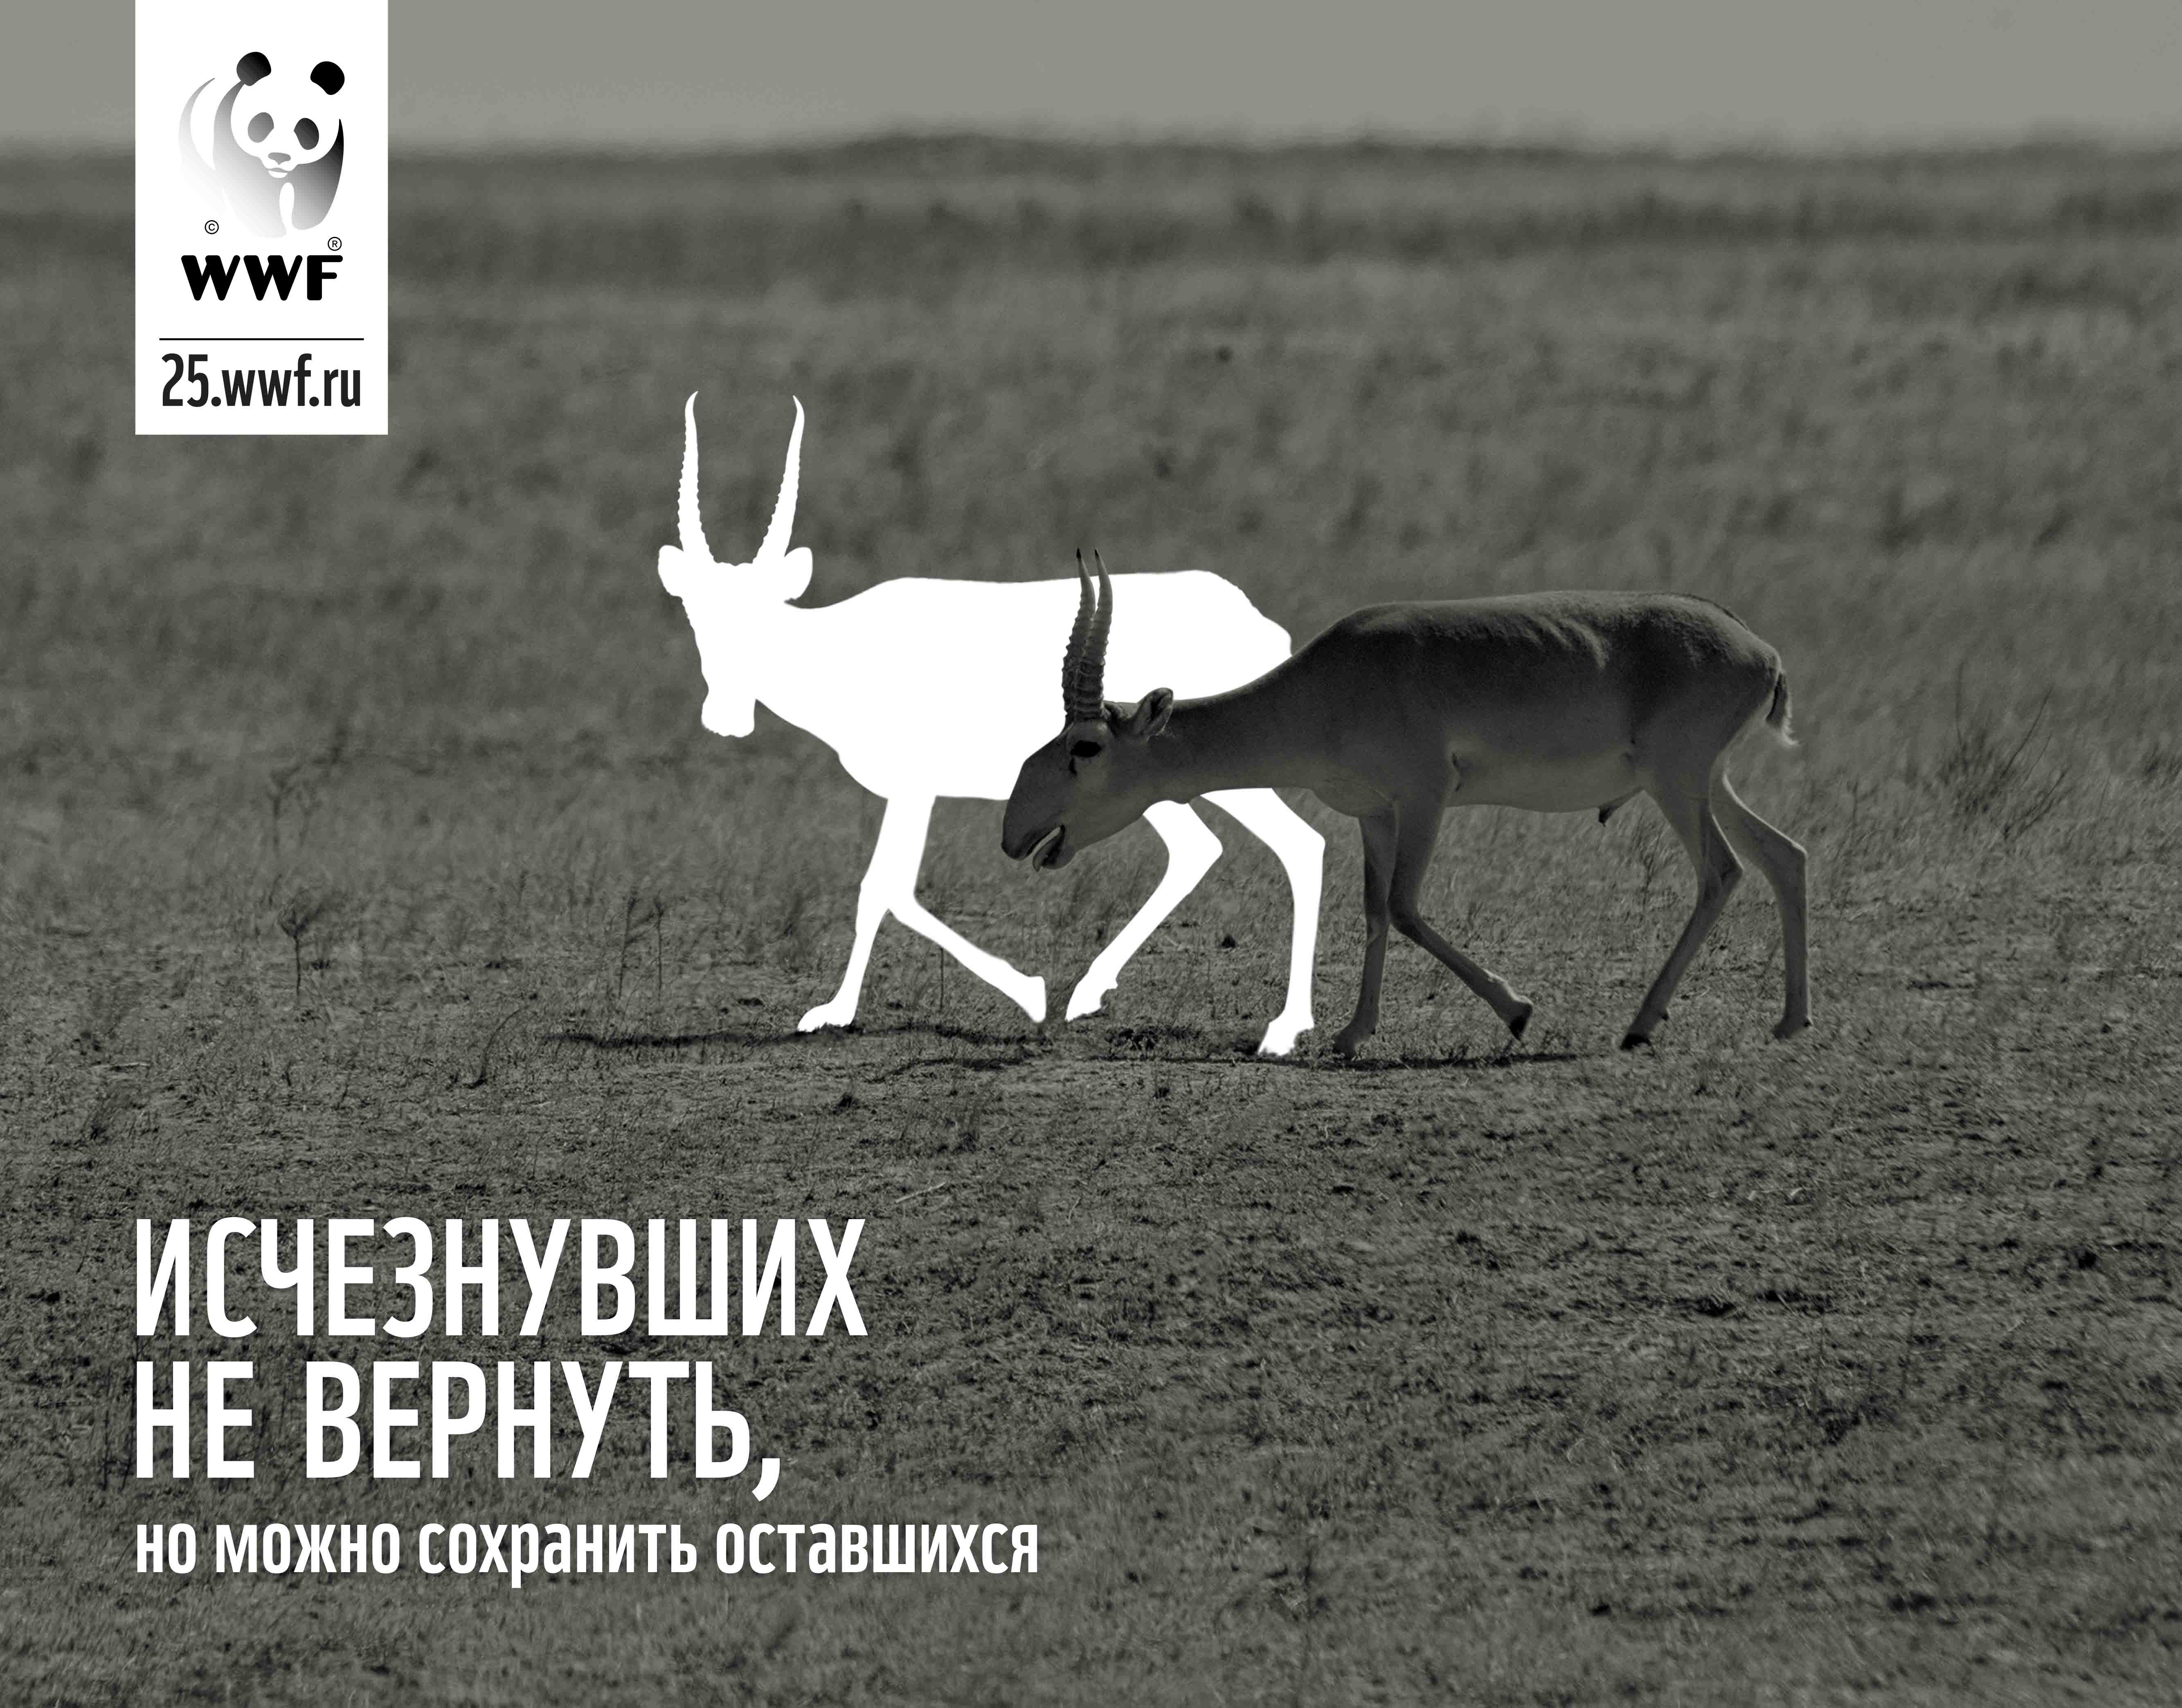 Реклама WWF В России